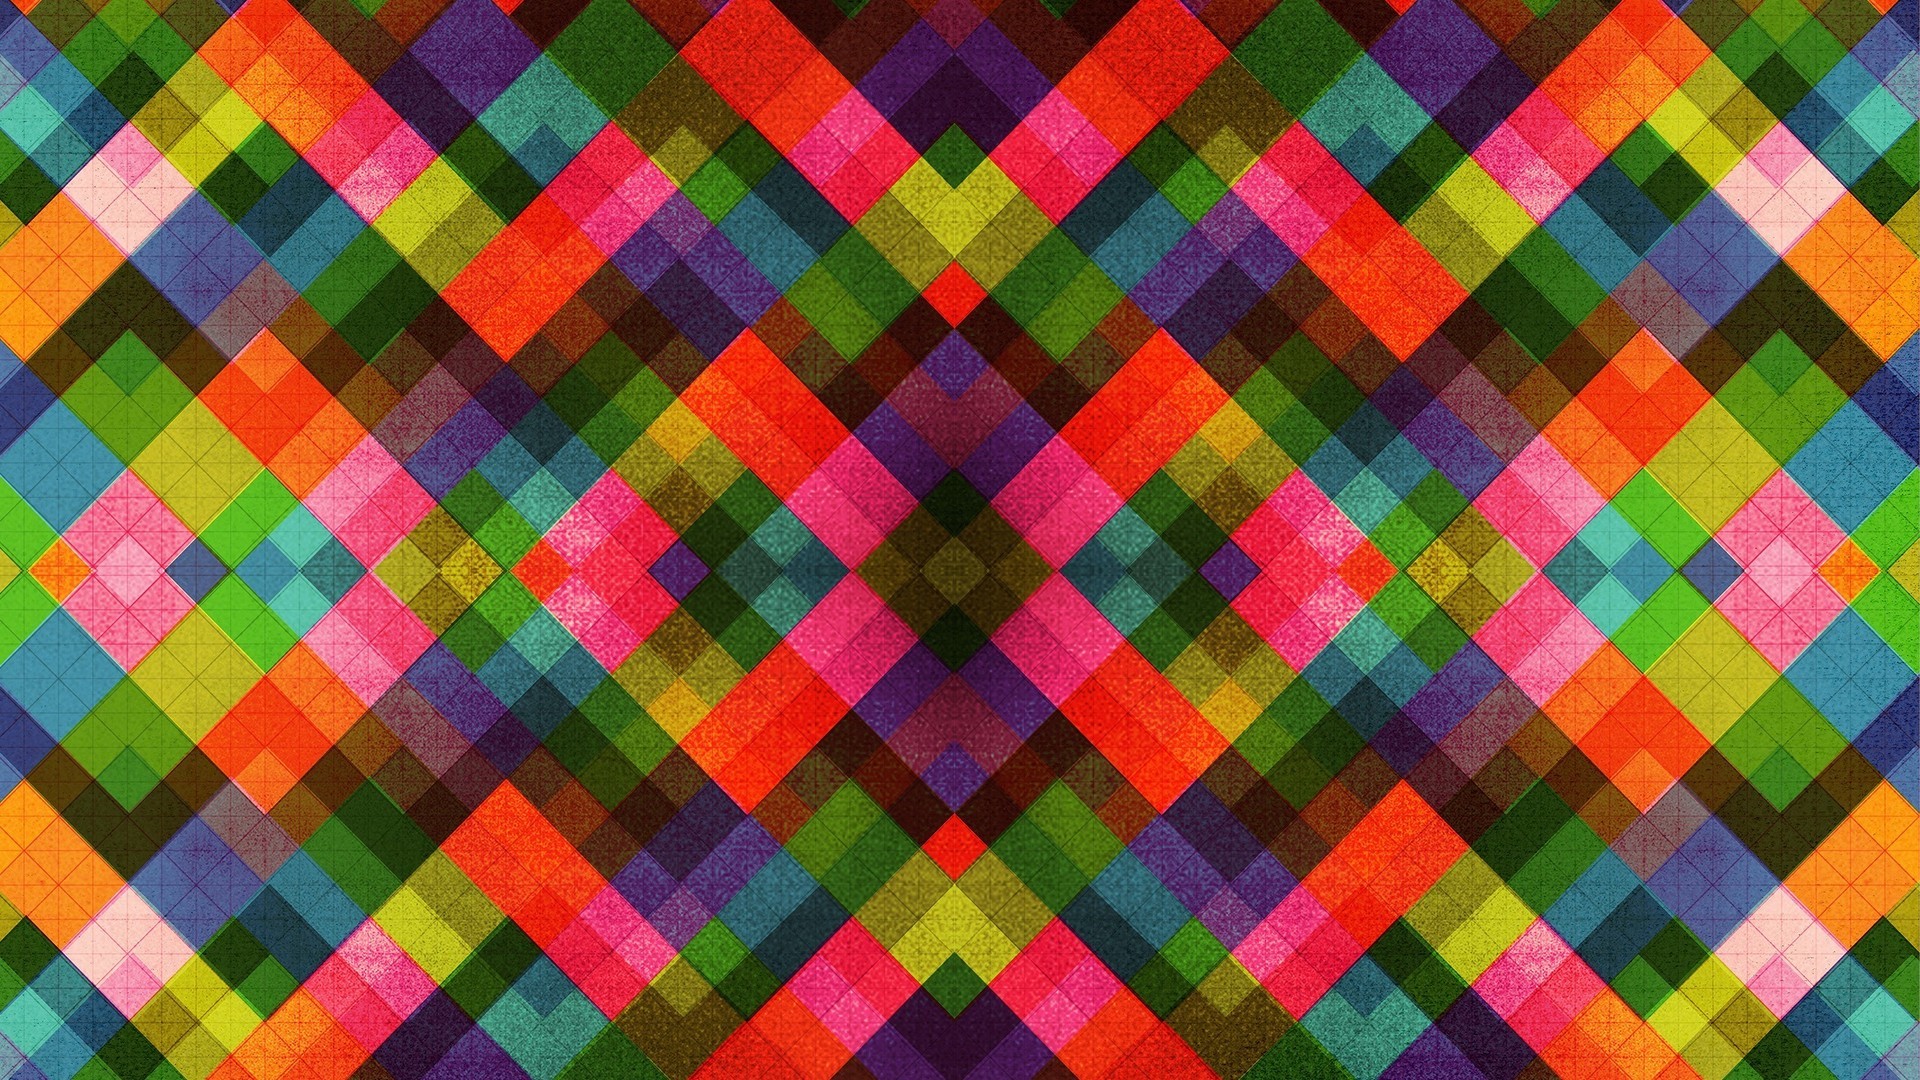 1920x1080 Multicolored tile pattern HD Wallpaper  Multicolored ...